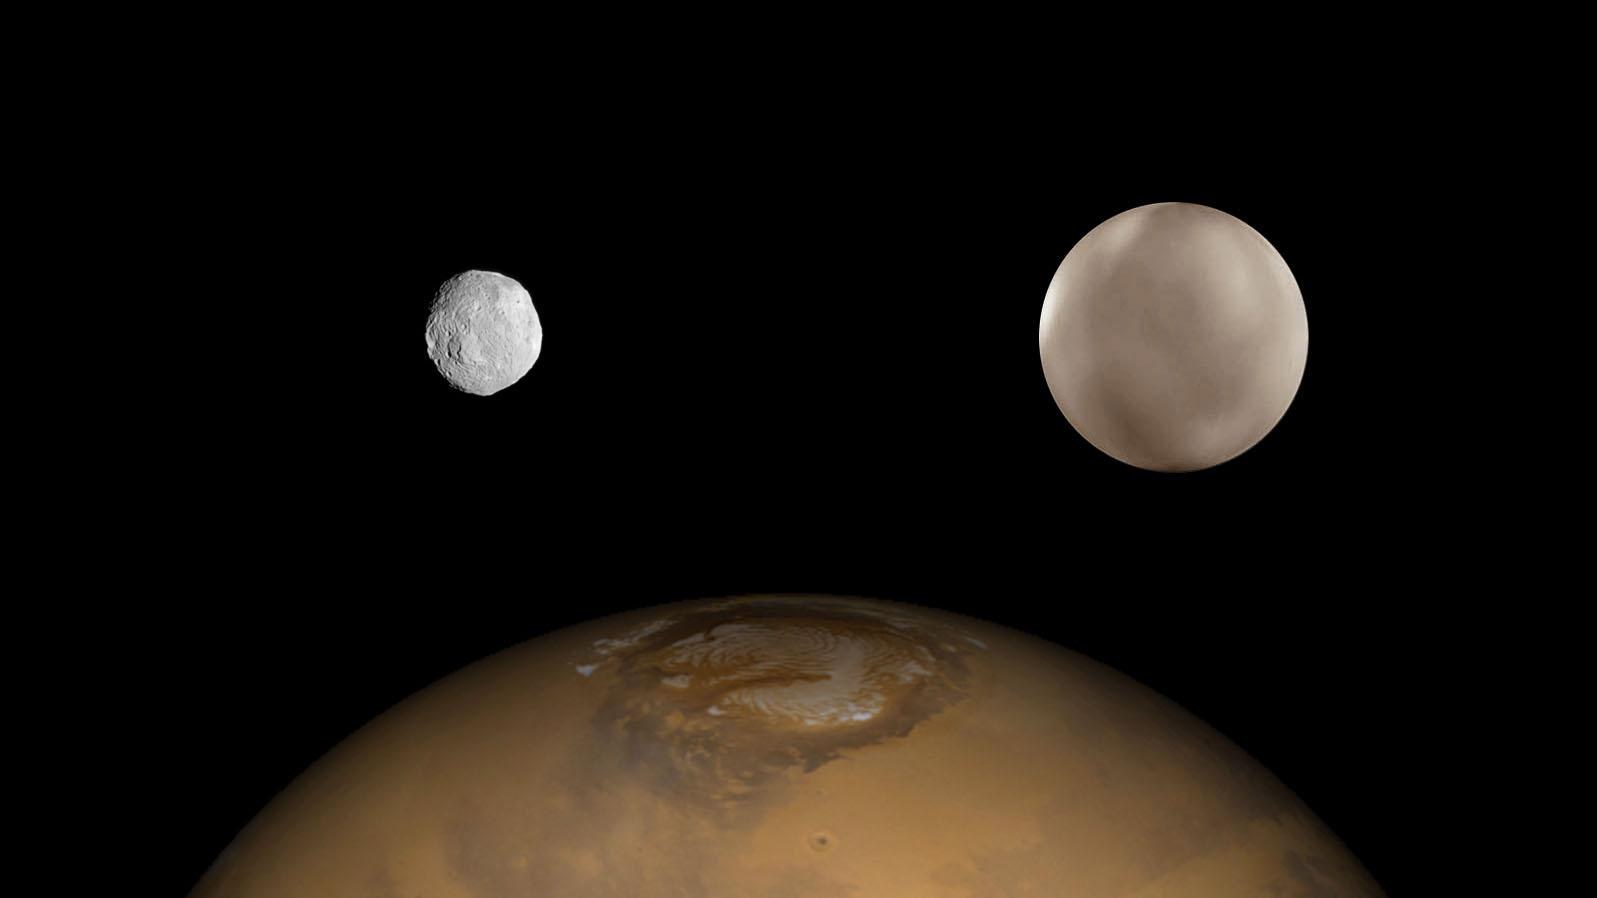 Vesta and Ceres vs Mars